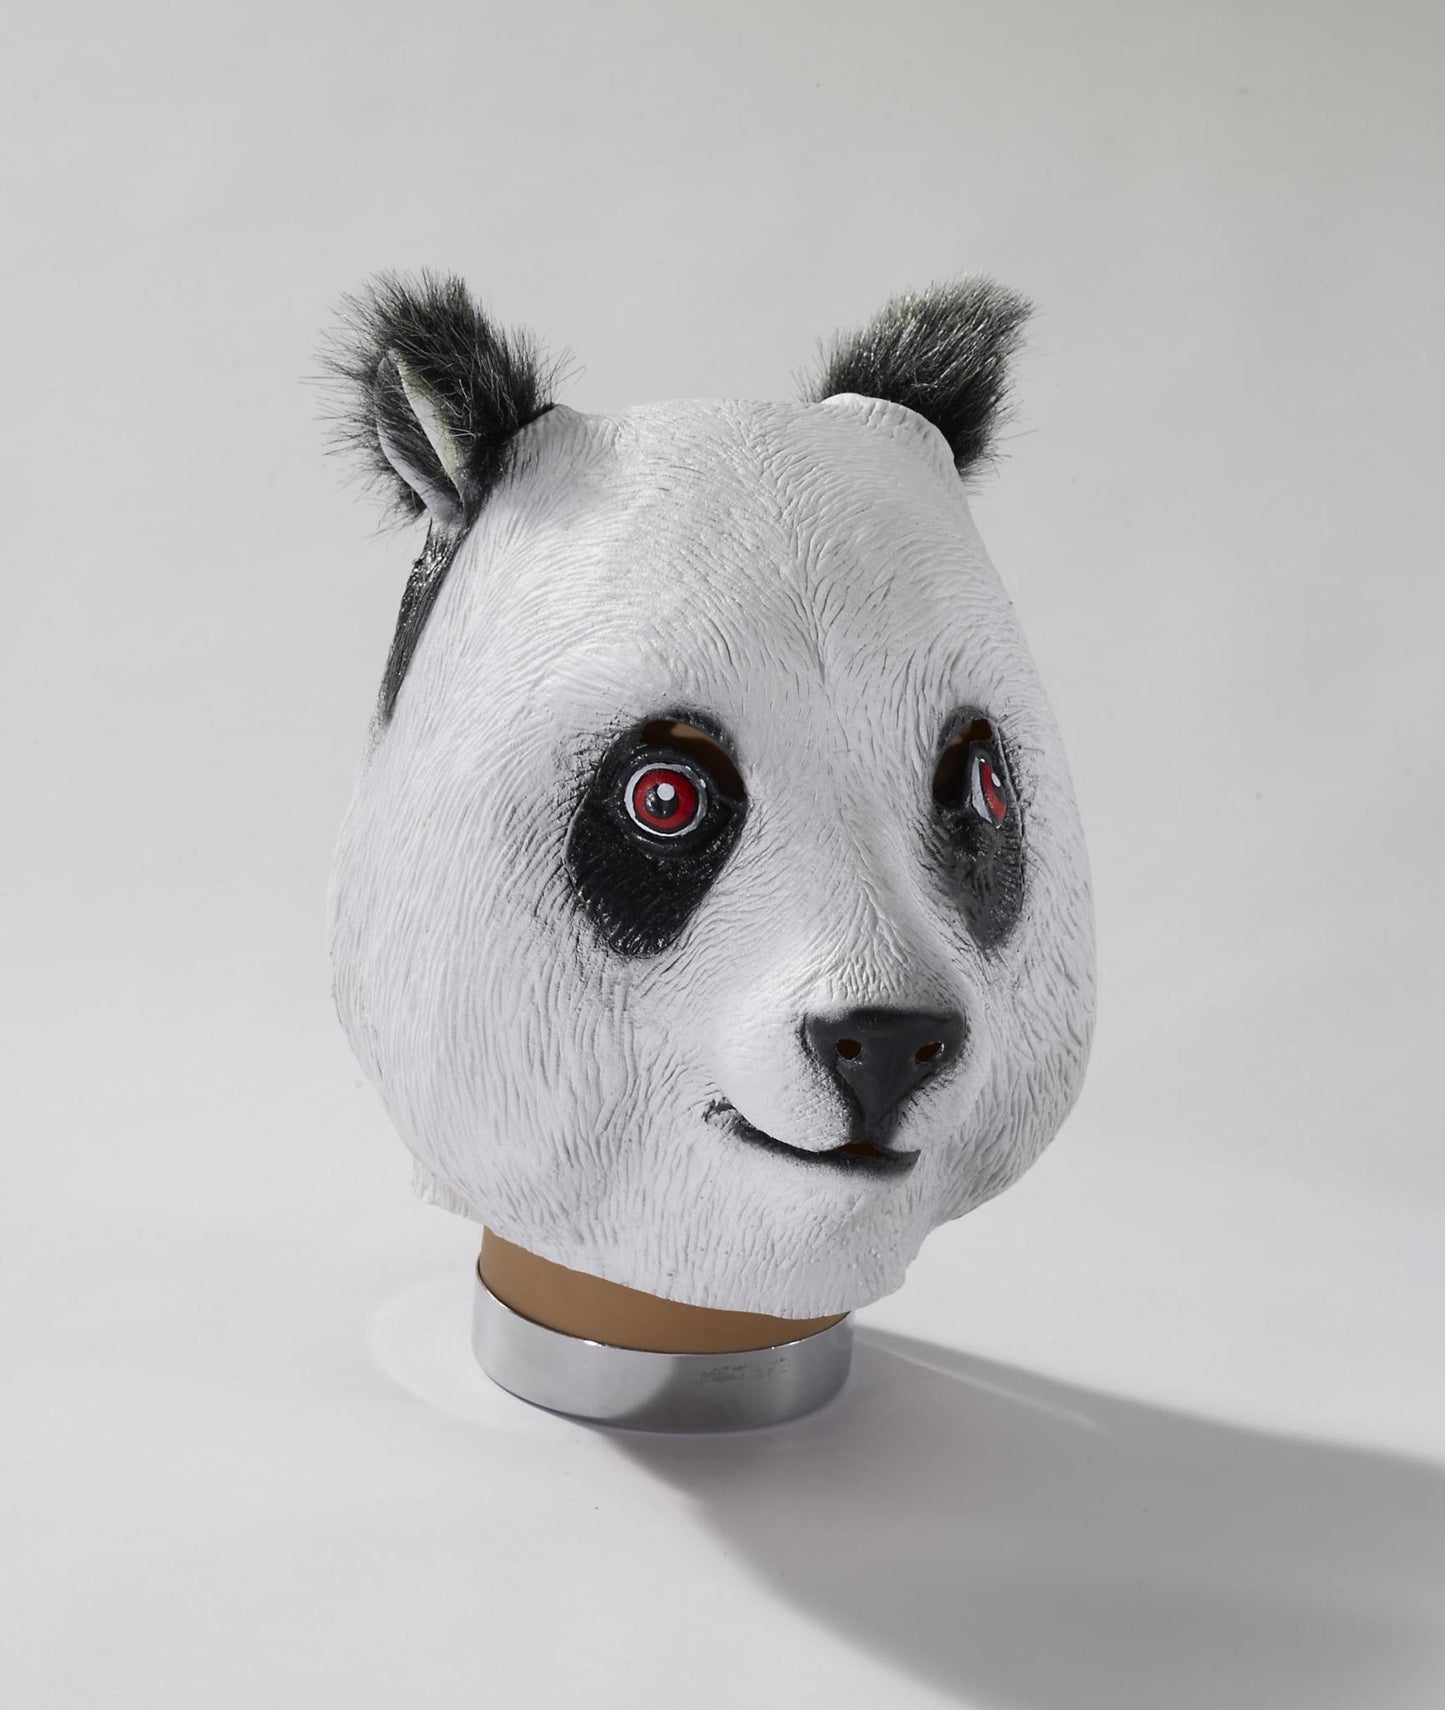 Deluxe Latex Panda Mask